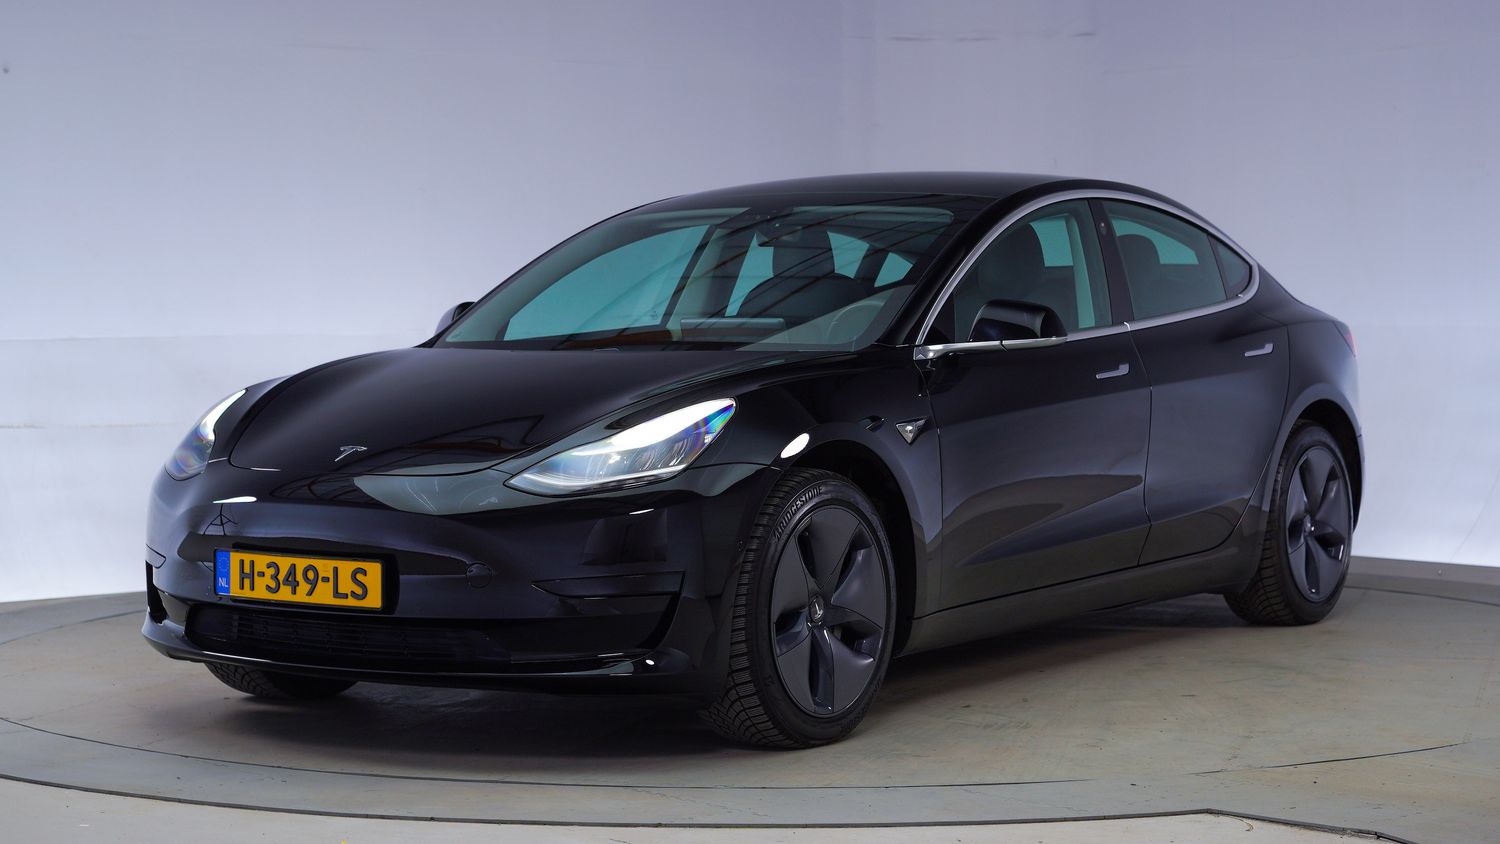 Tesla Model 3 Hatchback 2020 H-349-LS 1